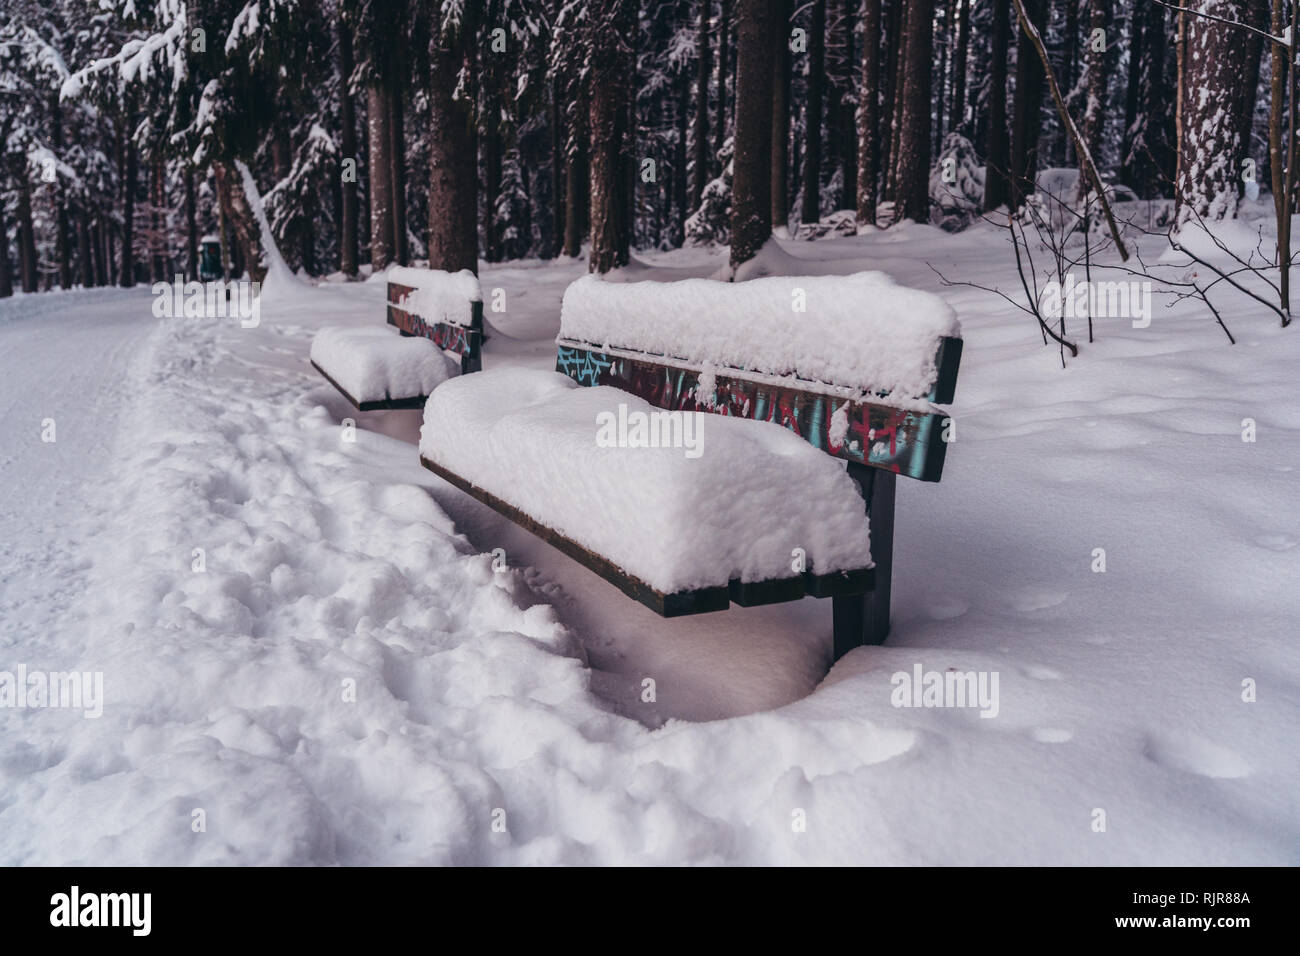 Banc de parc entièrement recouvert de neige sur un jour d'hiver Banque D'Images